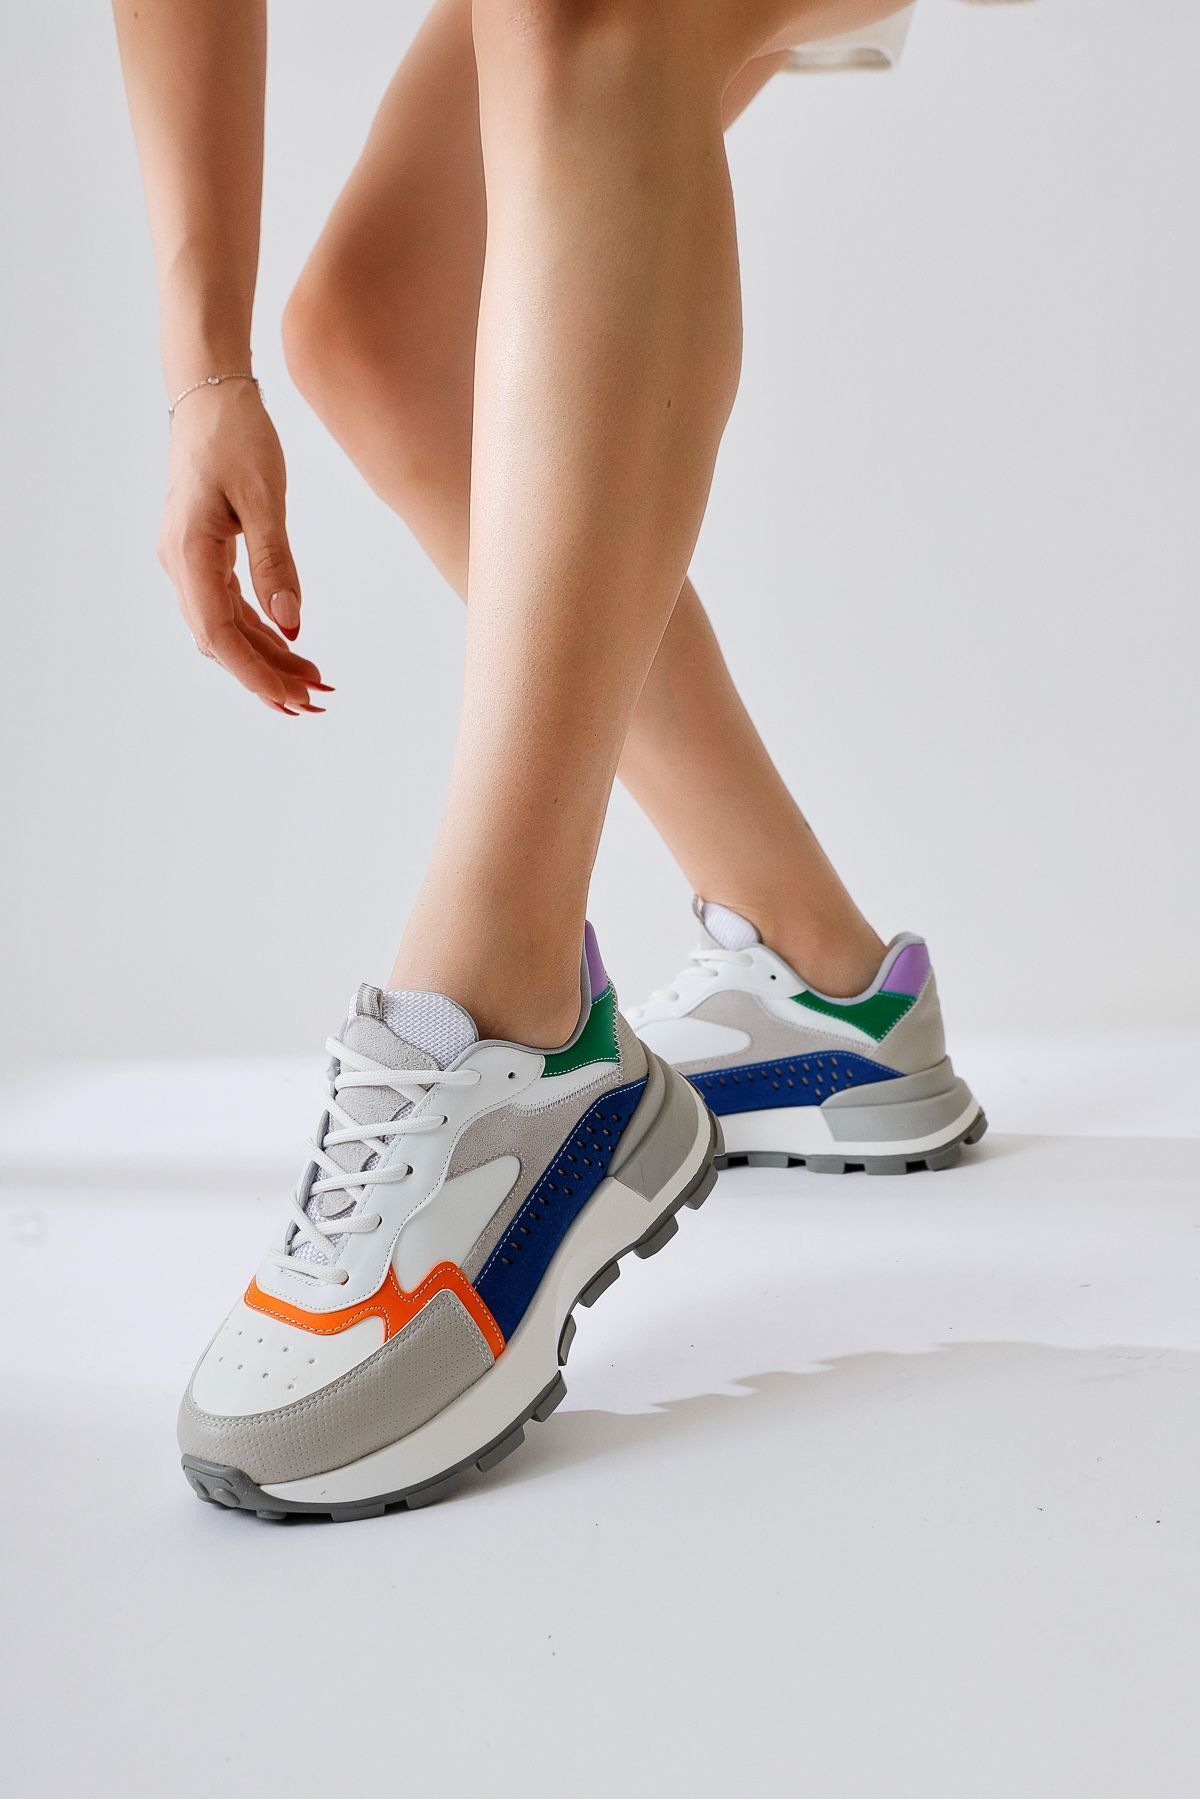 Limoya Sin Gri-Lacivert Süet Bağcıklı Yüksek Taban Sneakers